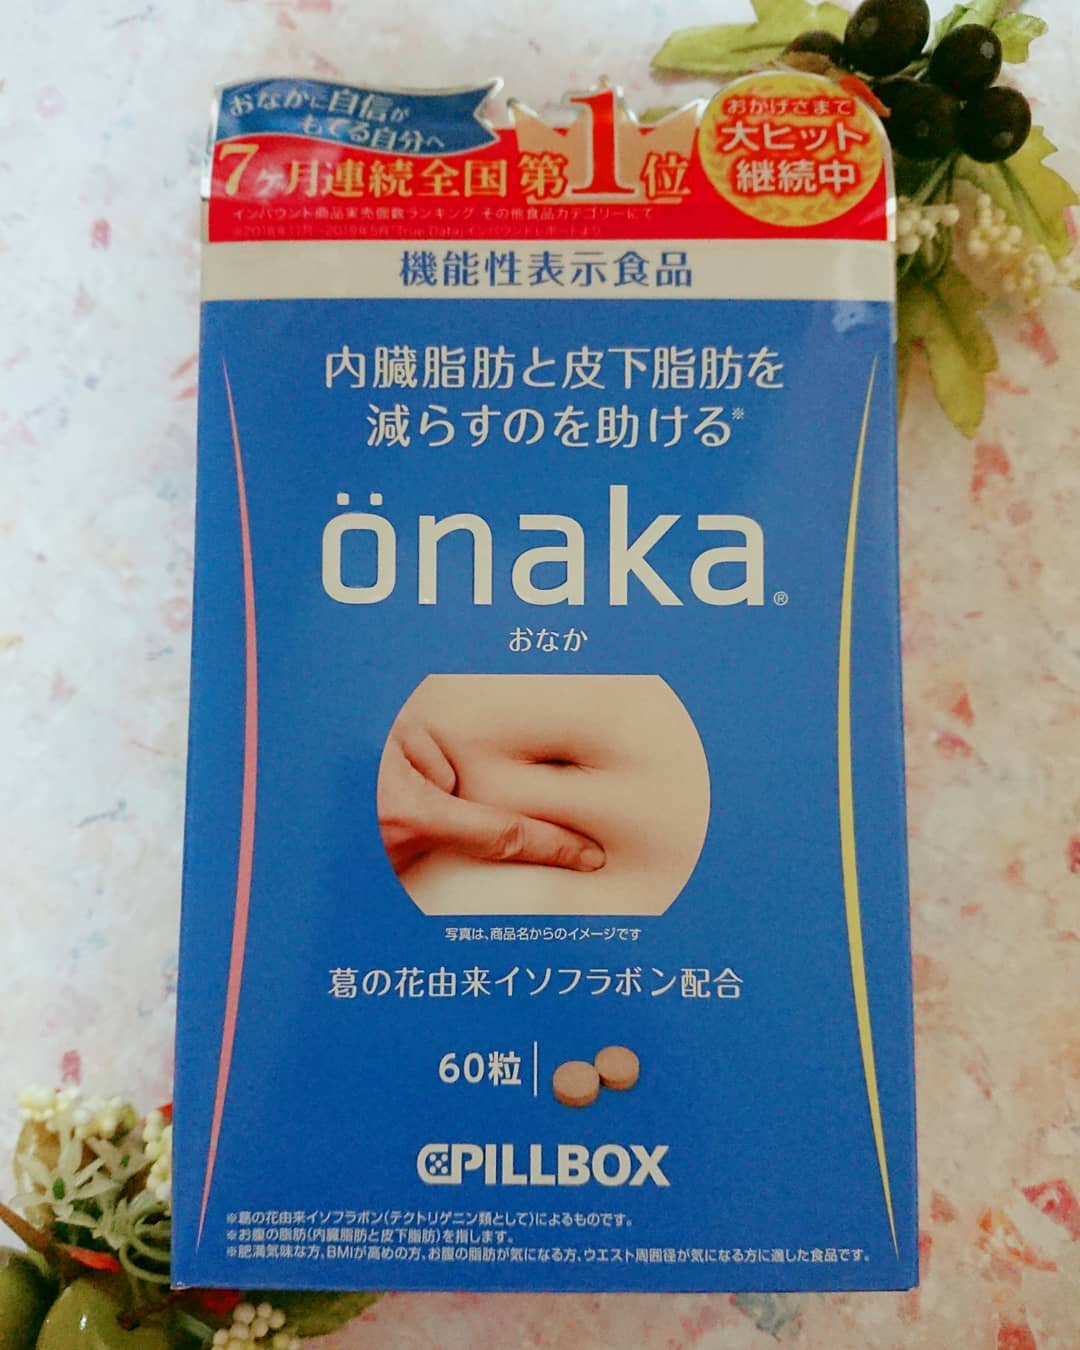 口コミ投稿：『önaka』(機能性表示食品)ピルボックスジャパン株式会社を試してみました😄2週間で-3…